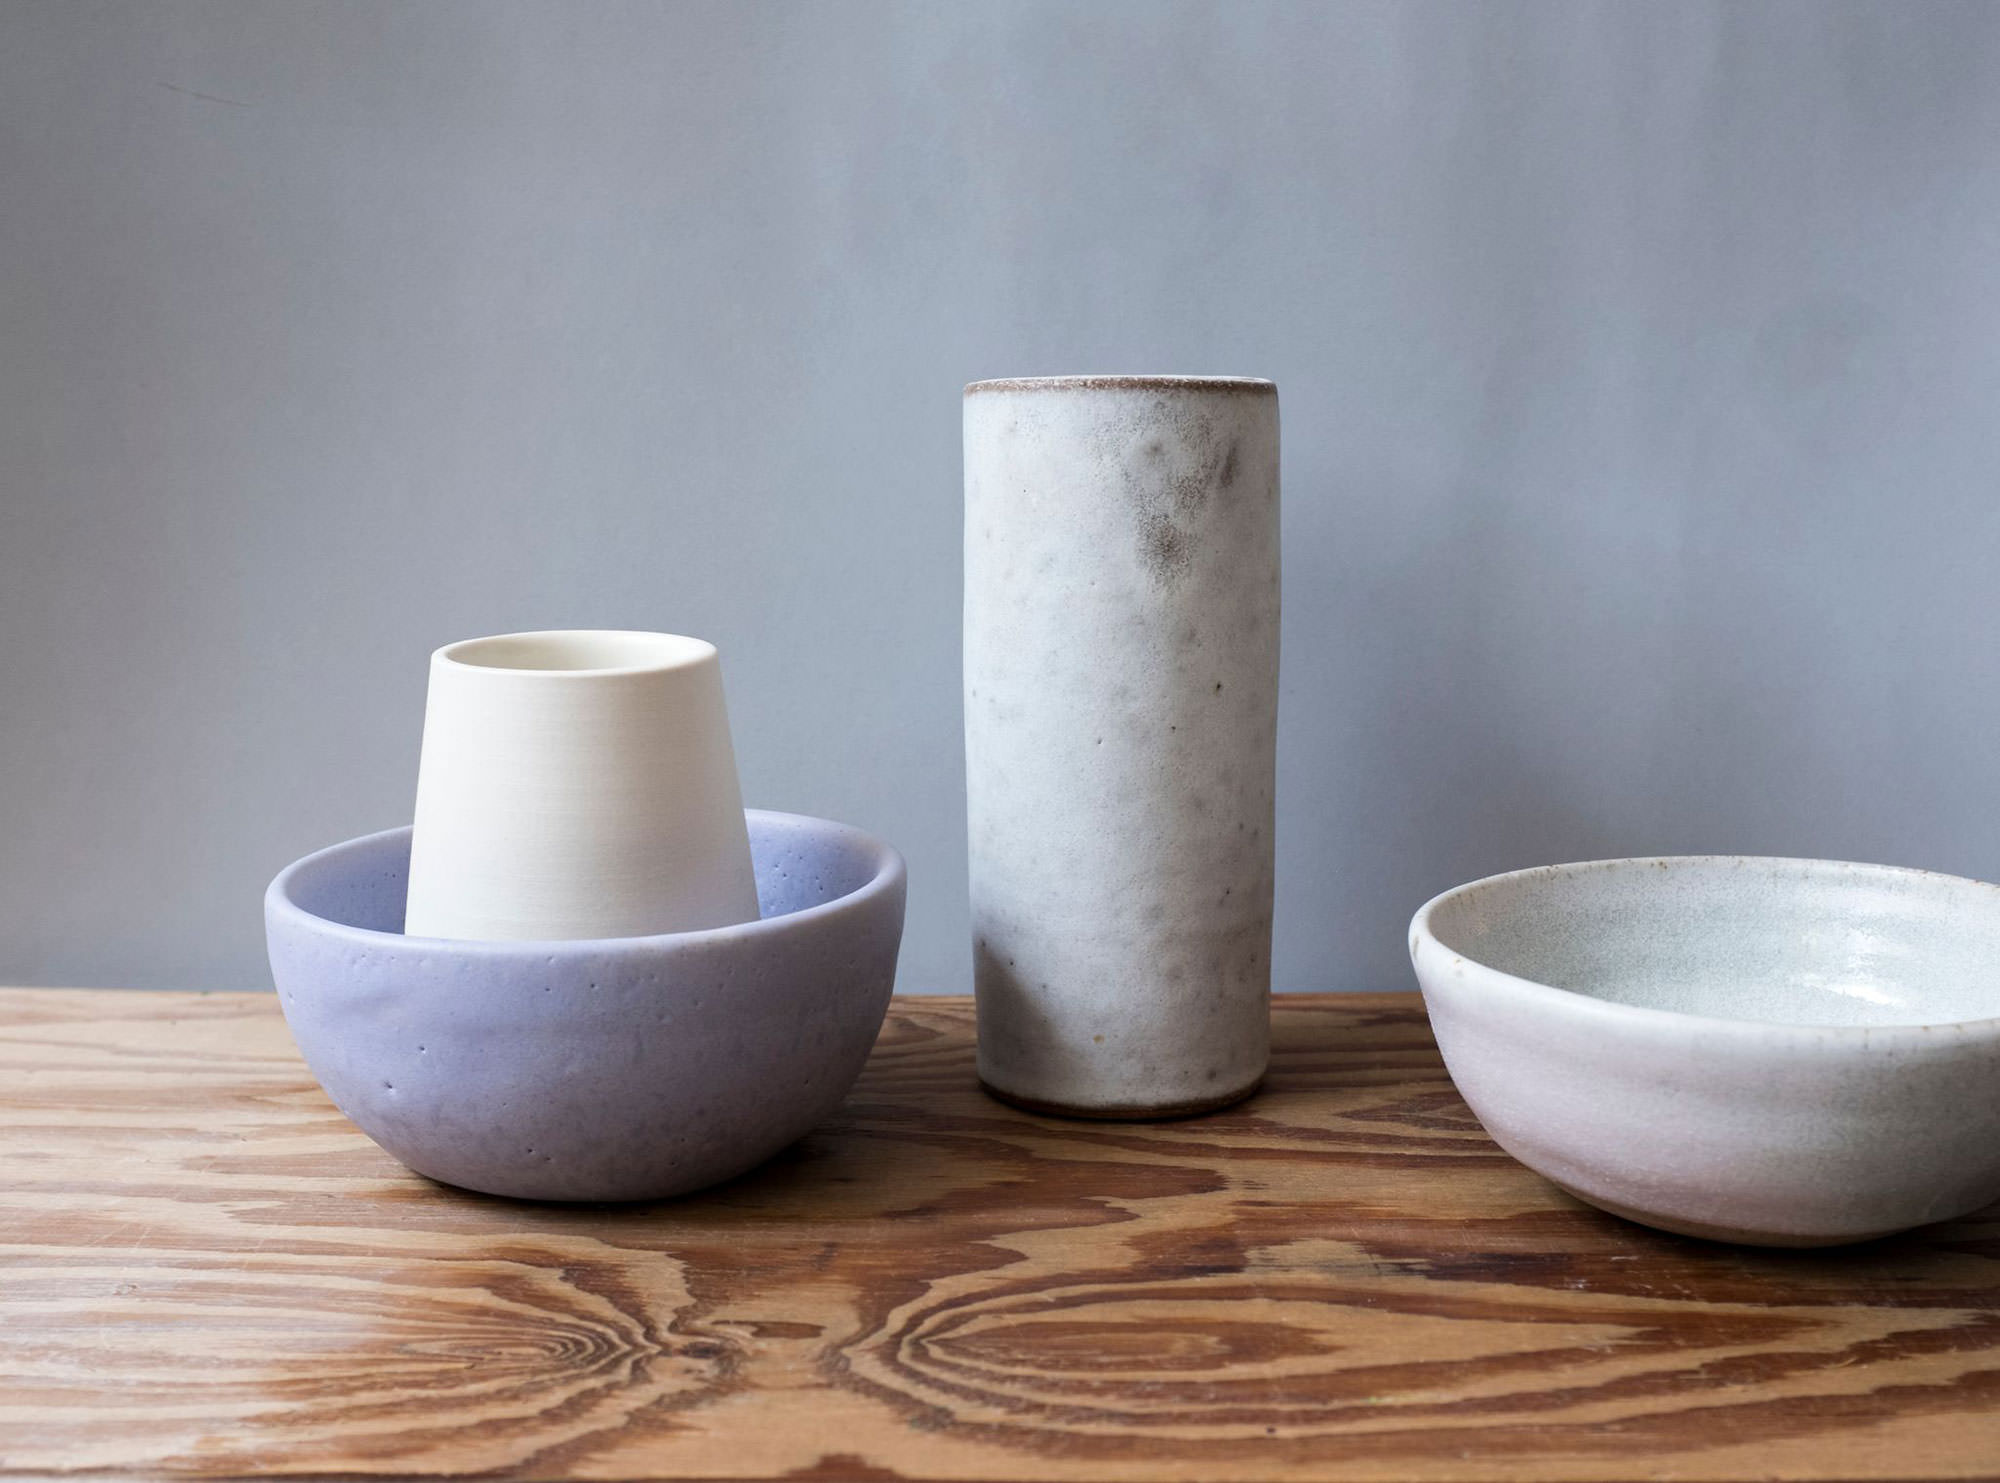 Wheel thrown ceramics (2020) Glazed stoneware and porcelain